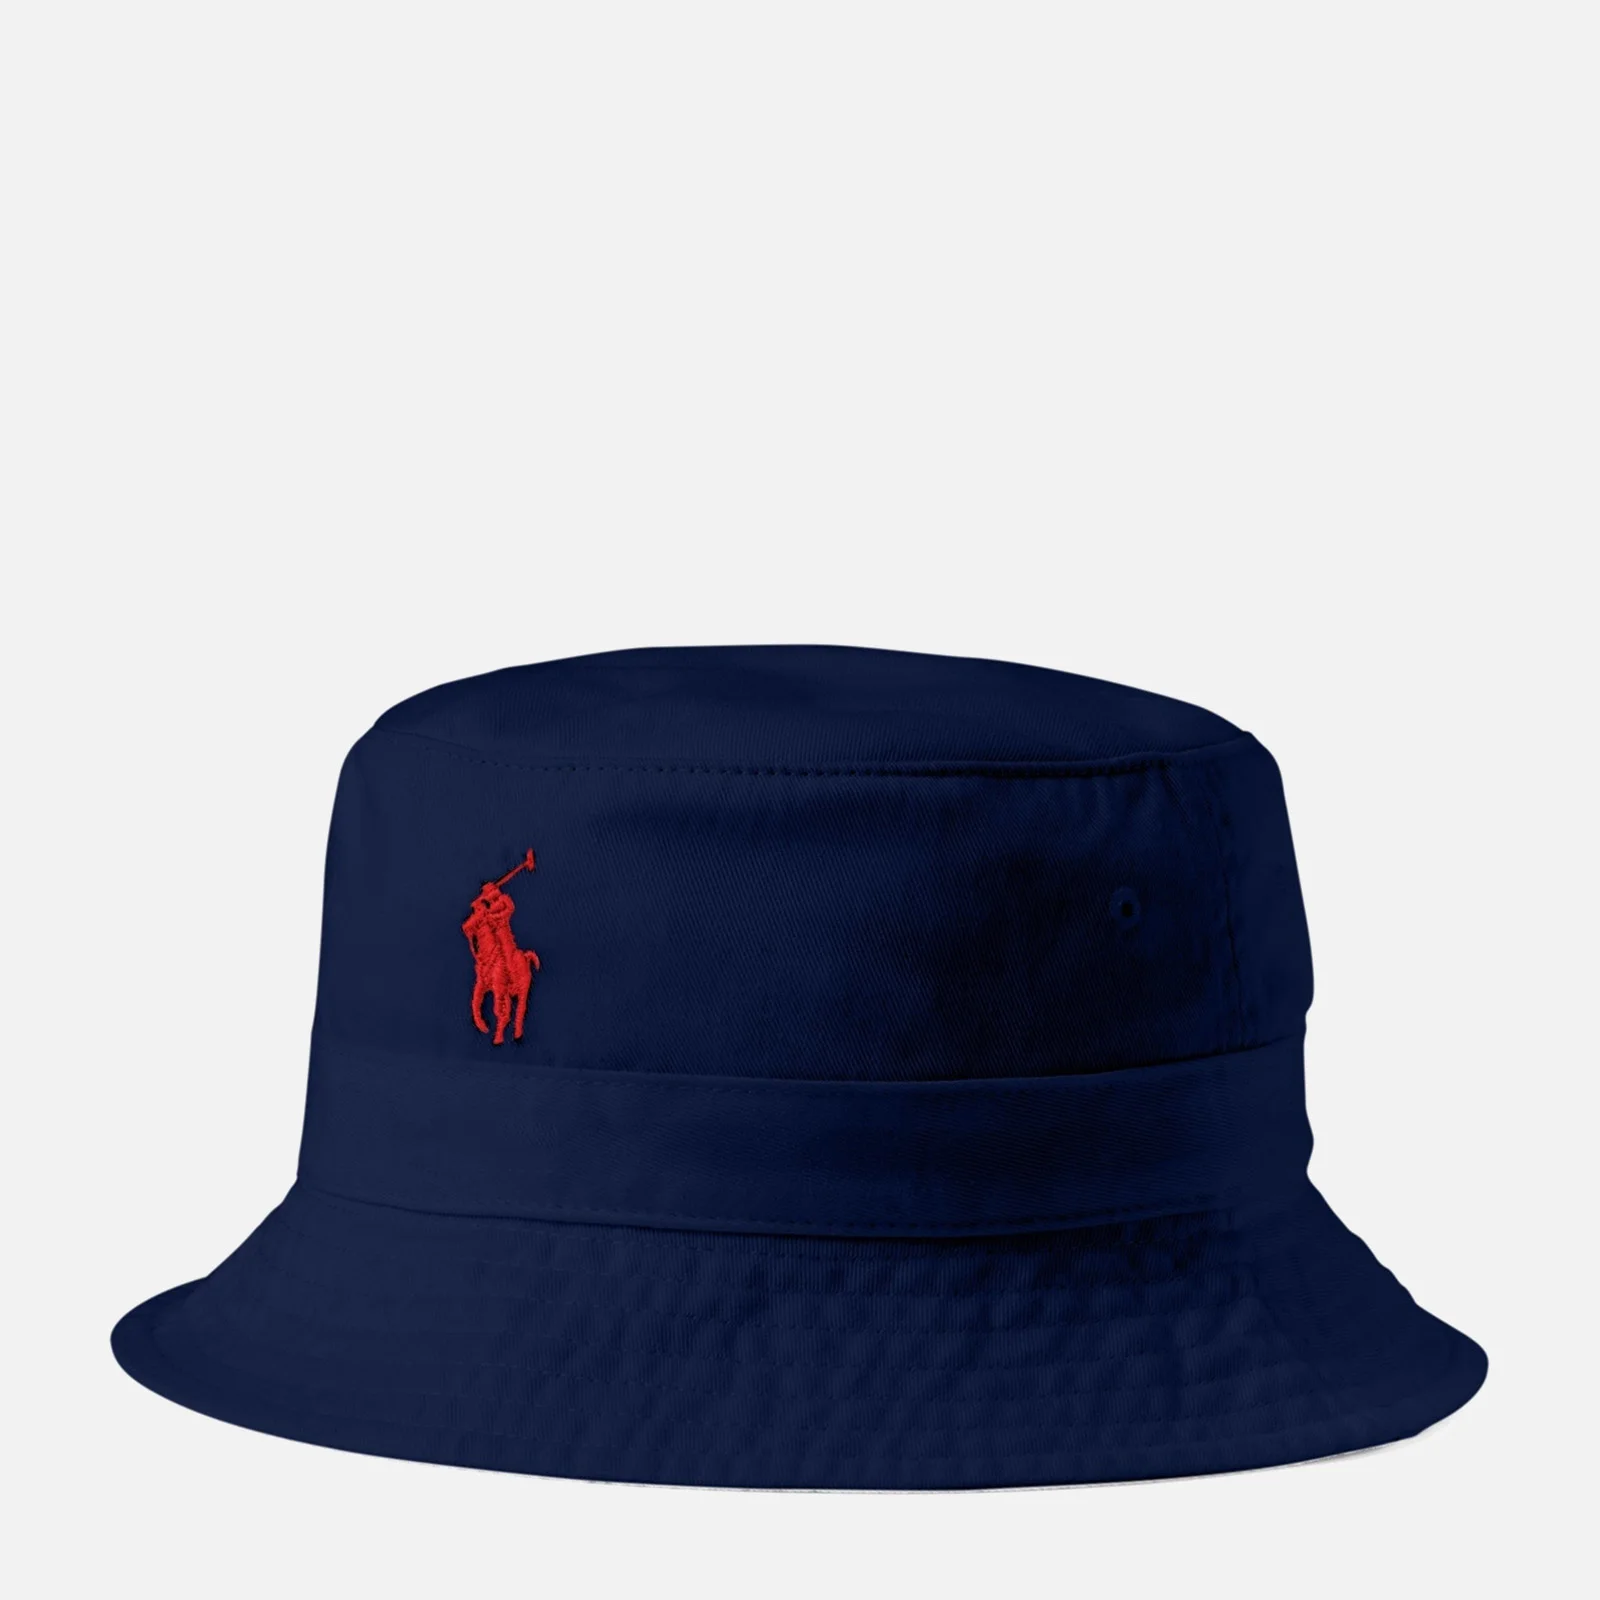 Polo Ralph Lauren Men's Loft Bucket Hat - Newport Navy Image 1